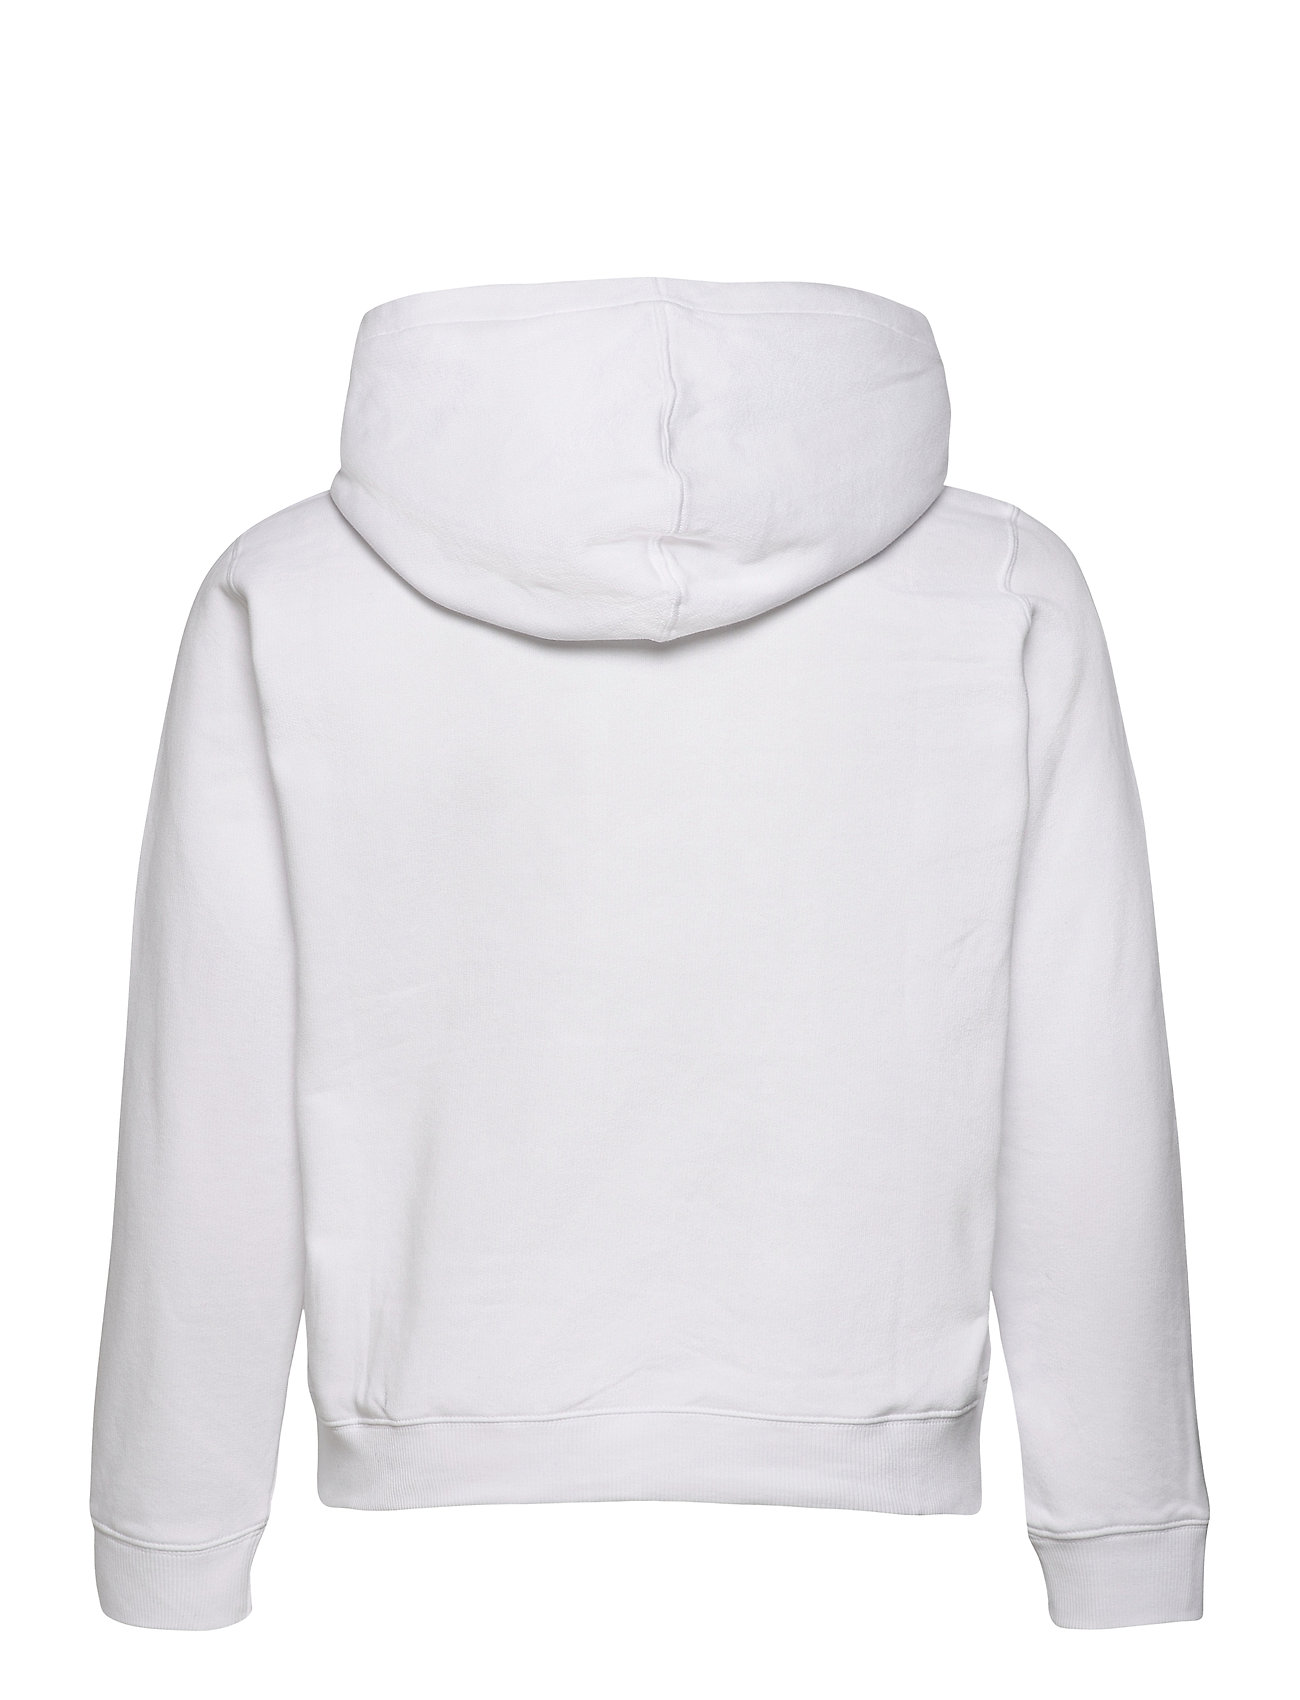 værdig Bedstefar kode Sort Calvin Klein Plus Glitter Monogram Hoodie Hoodie Trøje Hvid Calvin  Klein Jeans hoodies for dame - Pashion.dk